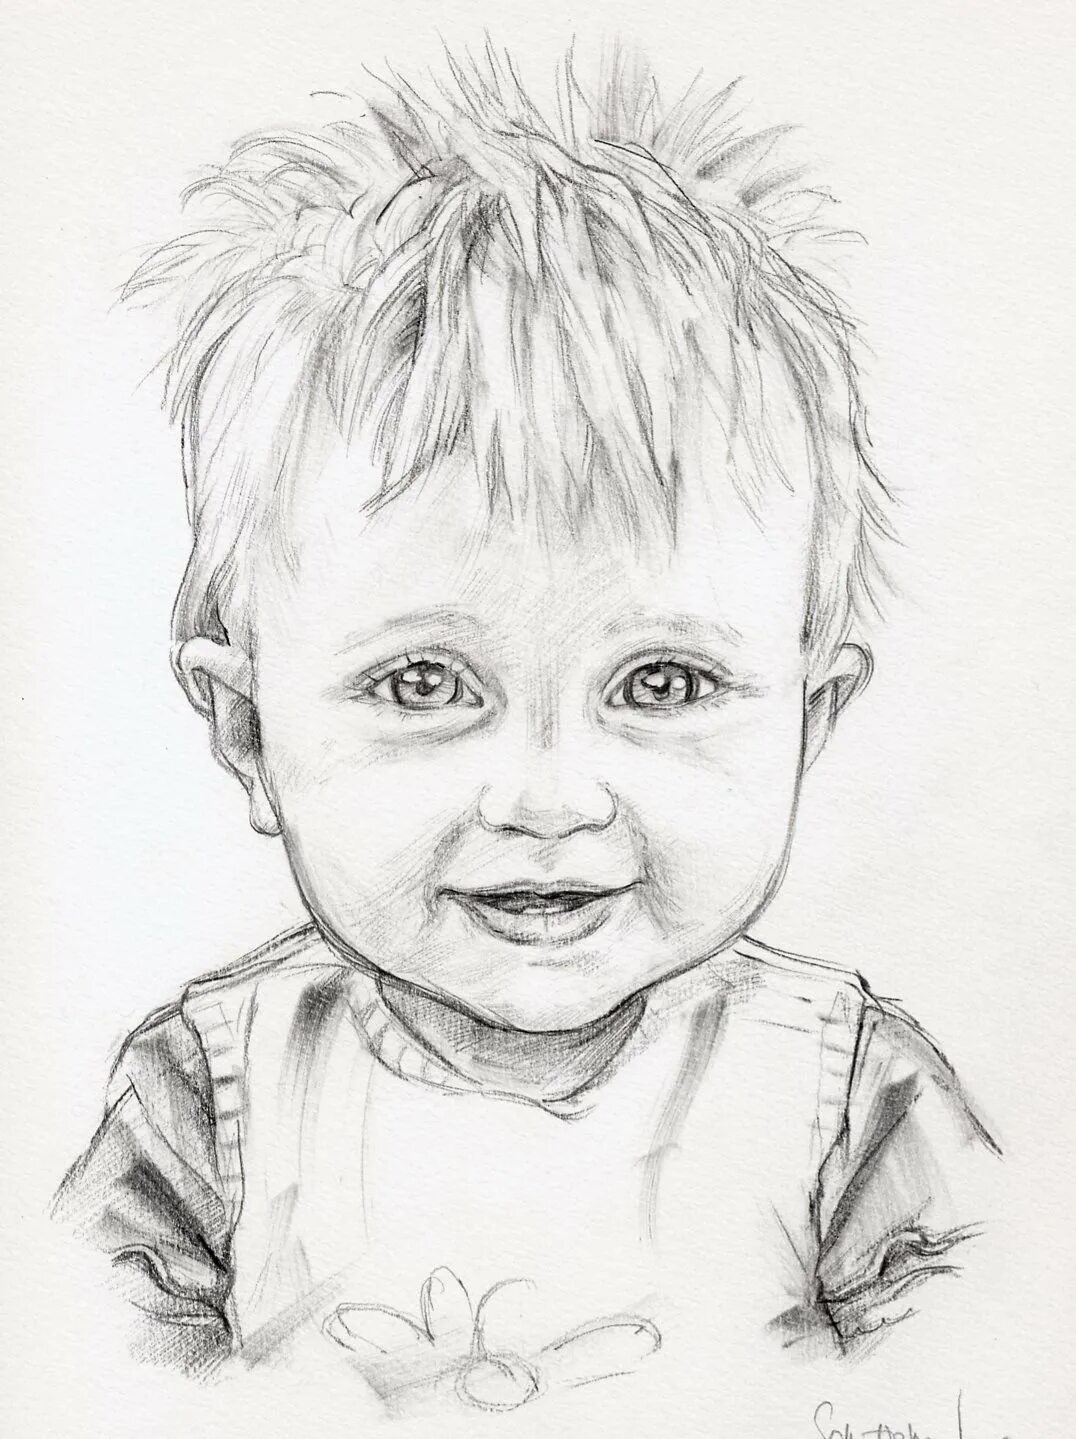 Детские рисунки карандашом. Рисунки карандашом дл де. Портрет ребенка карандашом. Рисунки карандашом децкии. Красивый рисунок мальчика карандашом